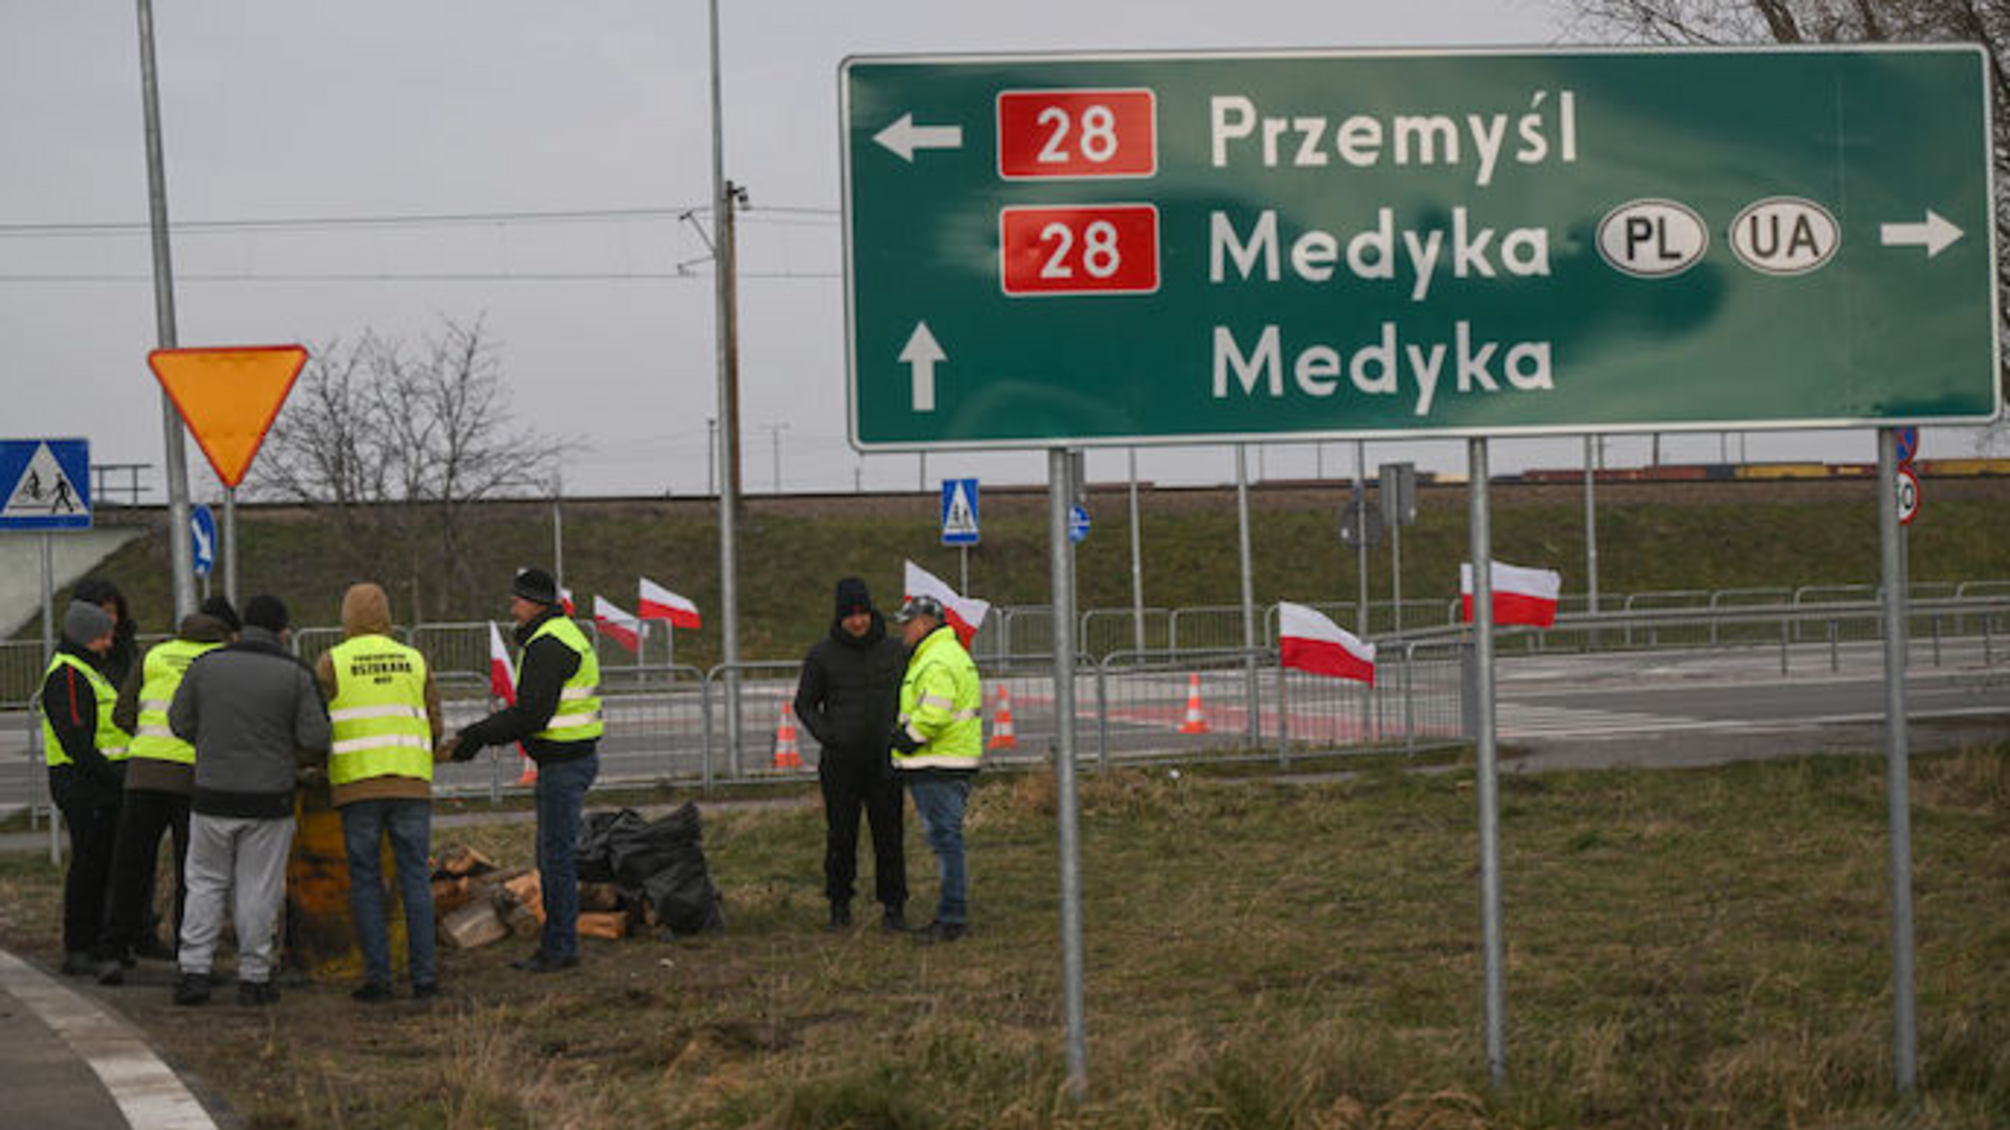 Польські фермери призупинили блокаду 'Шегині-Медика': новий уряд Польщі веде перемовини